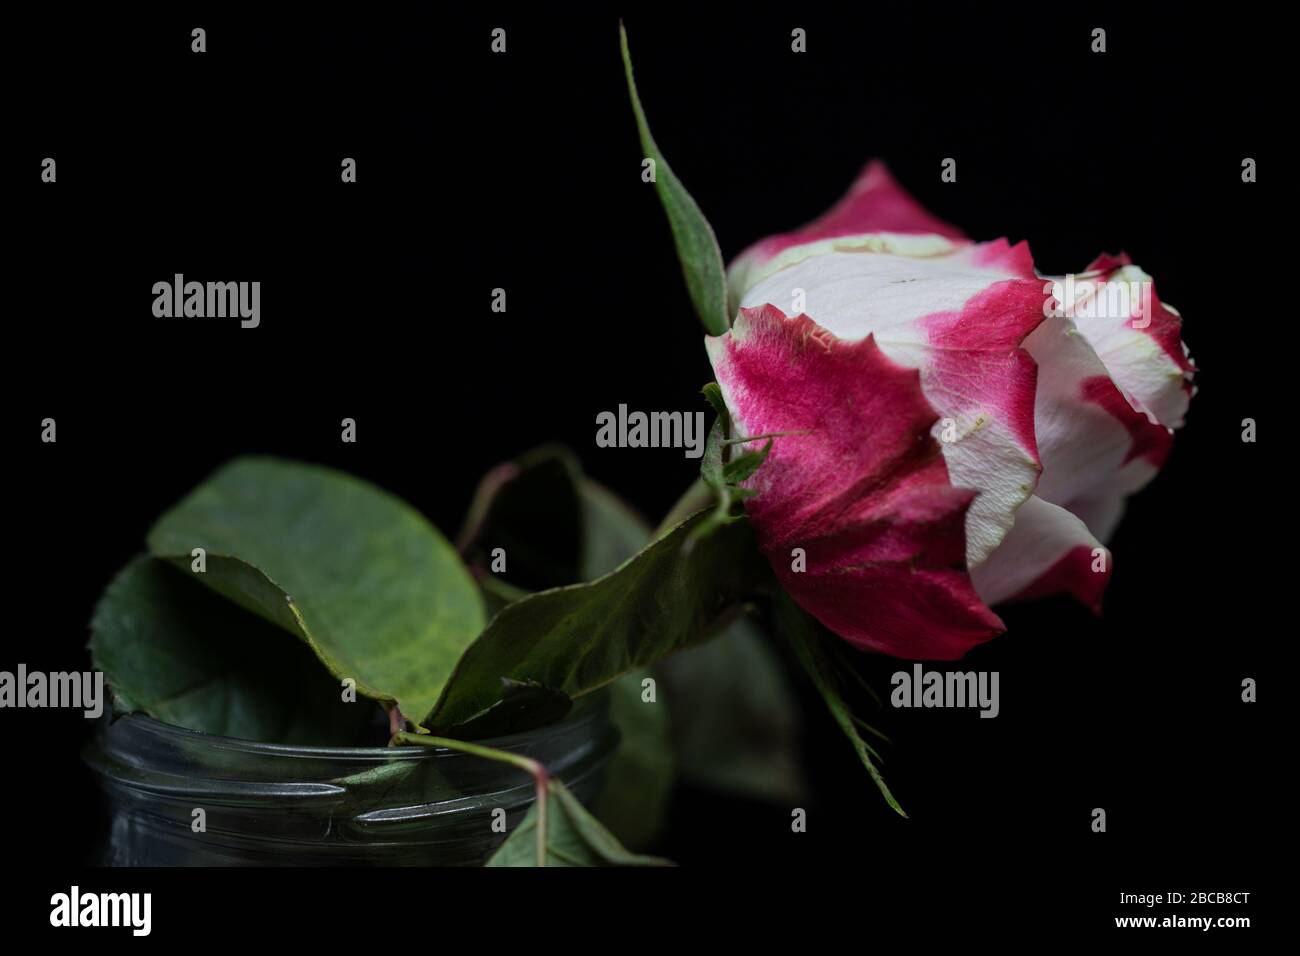 Welkende Rose (8 Tage alt) /wilt rose Stock Photo